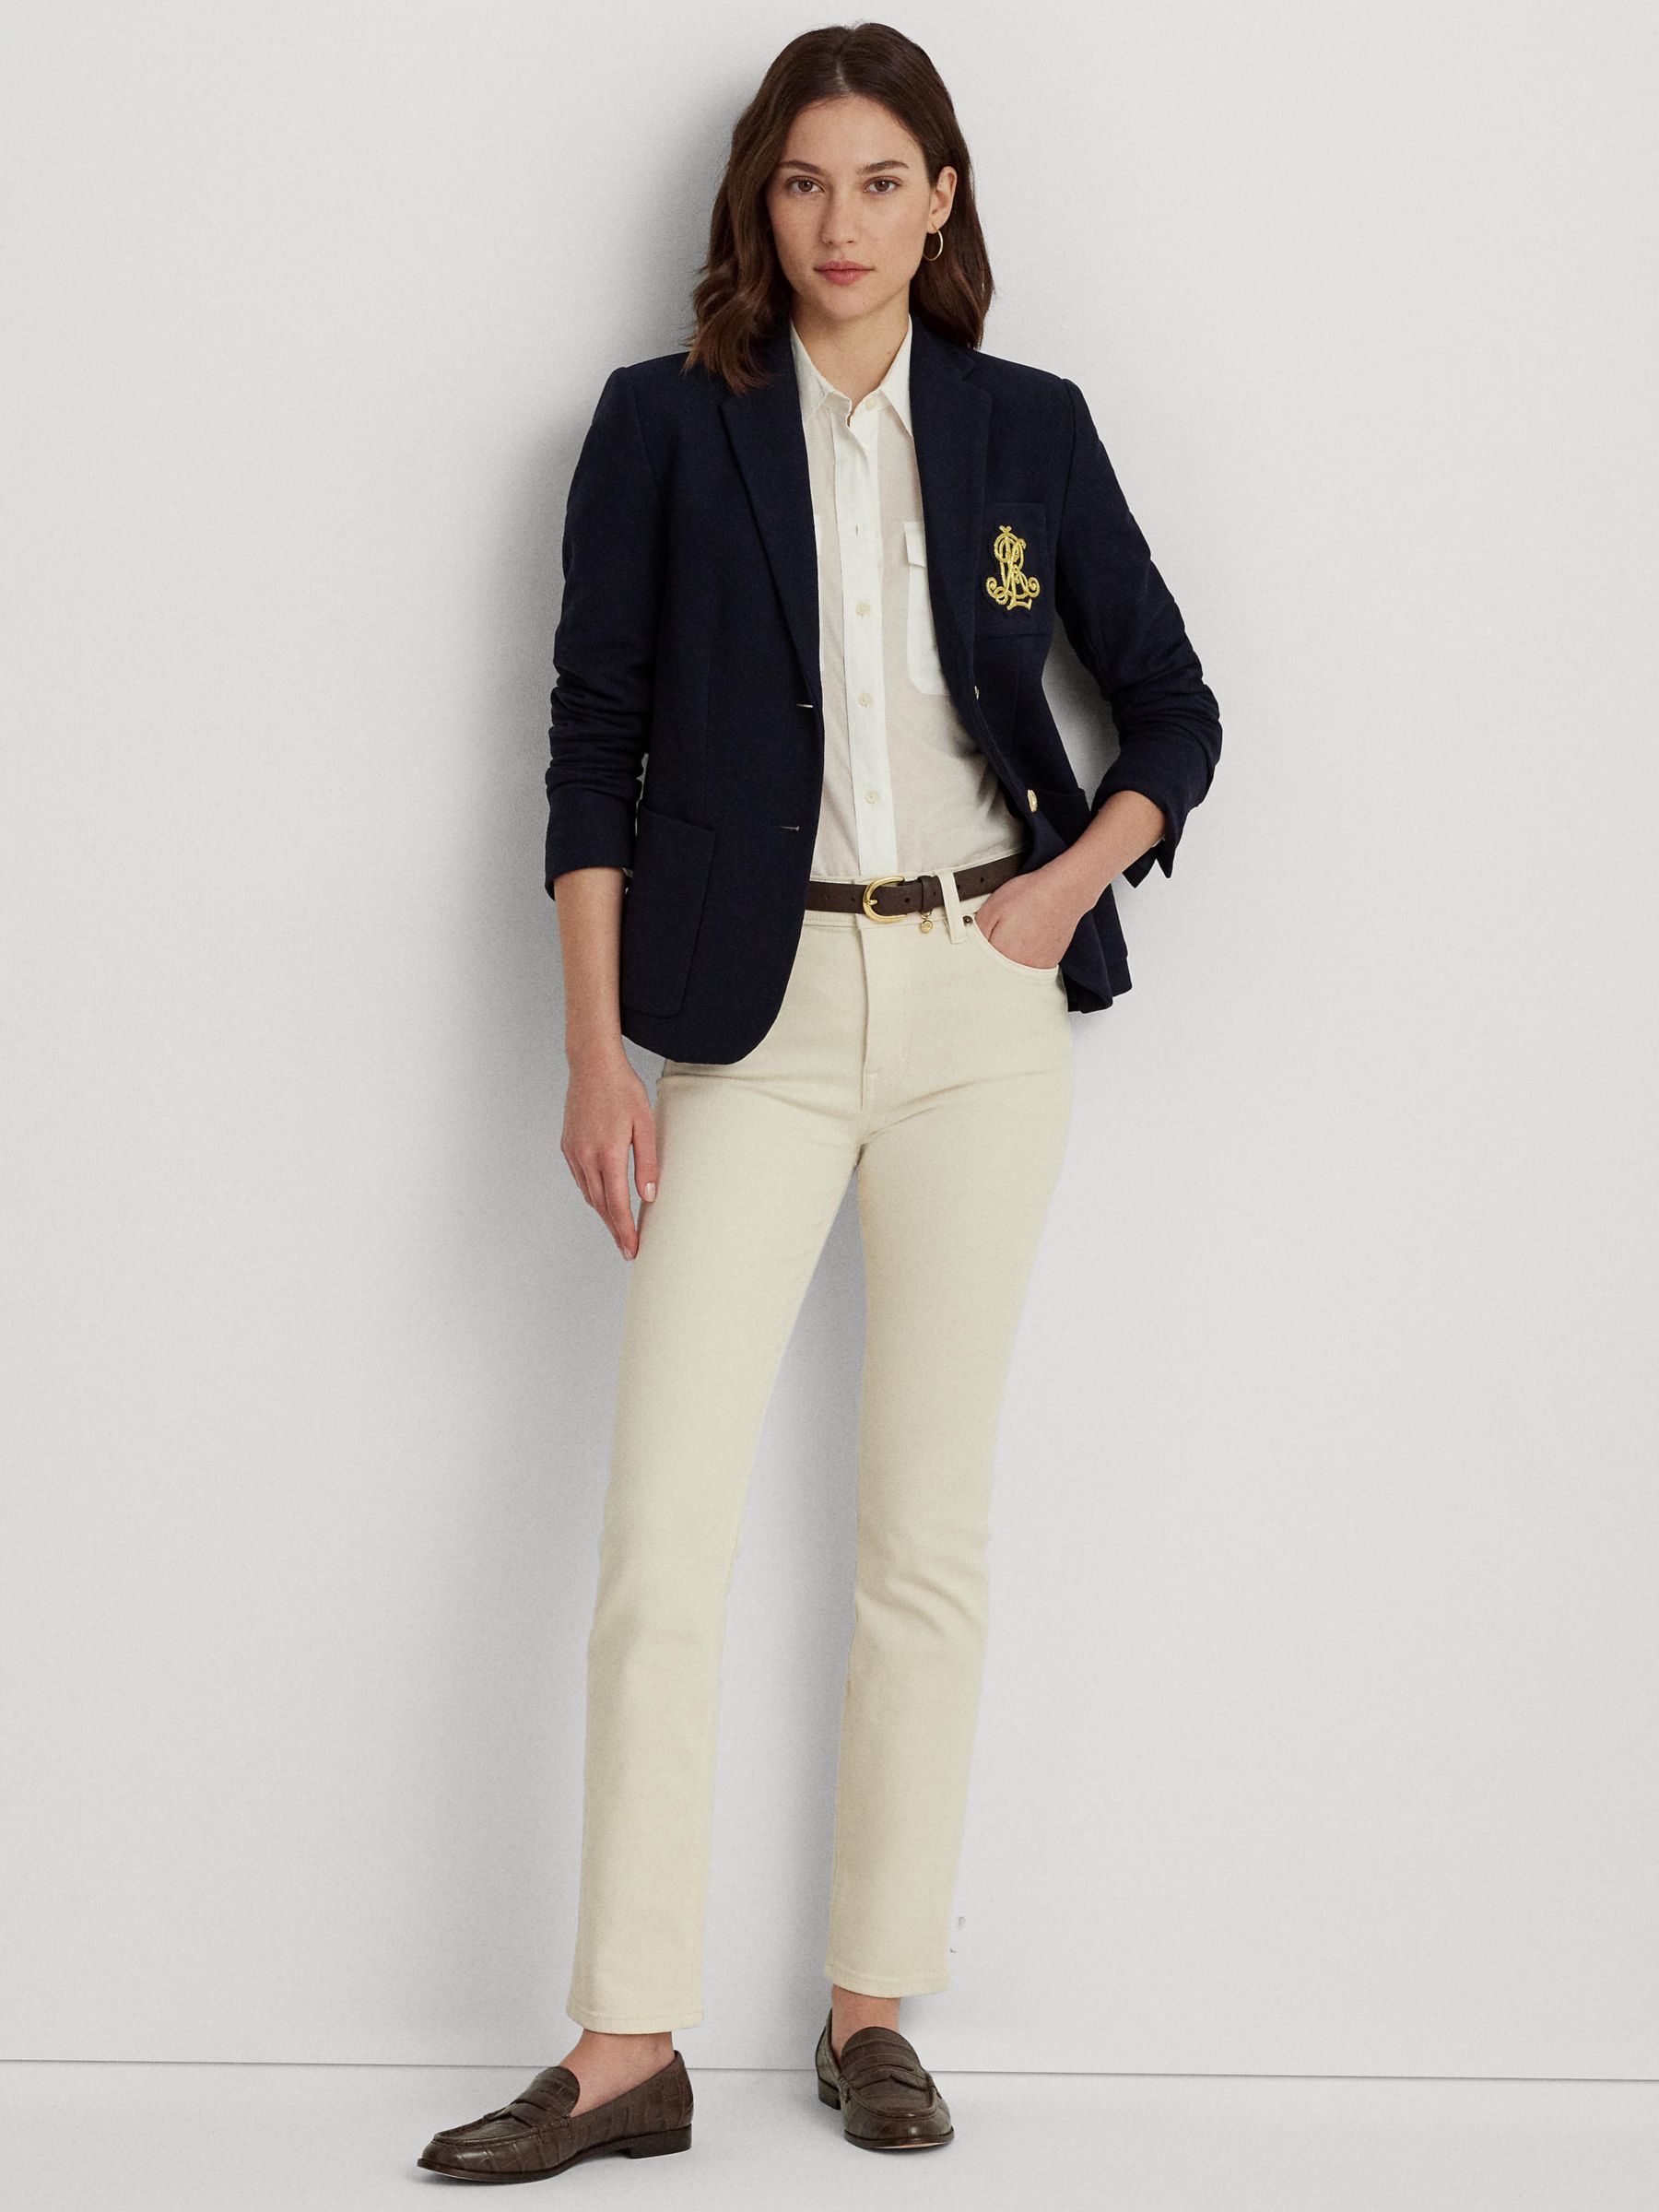 Women's Ralph Lauren Coats & Jackets | John Lewis & Partners